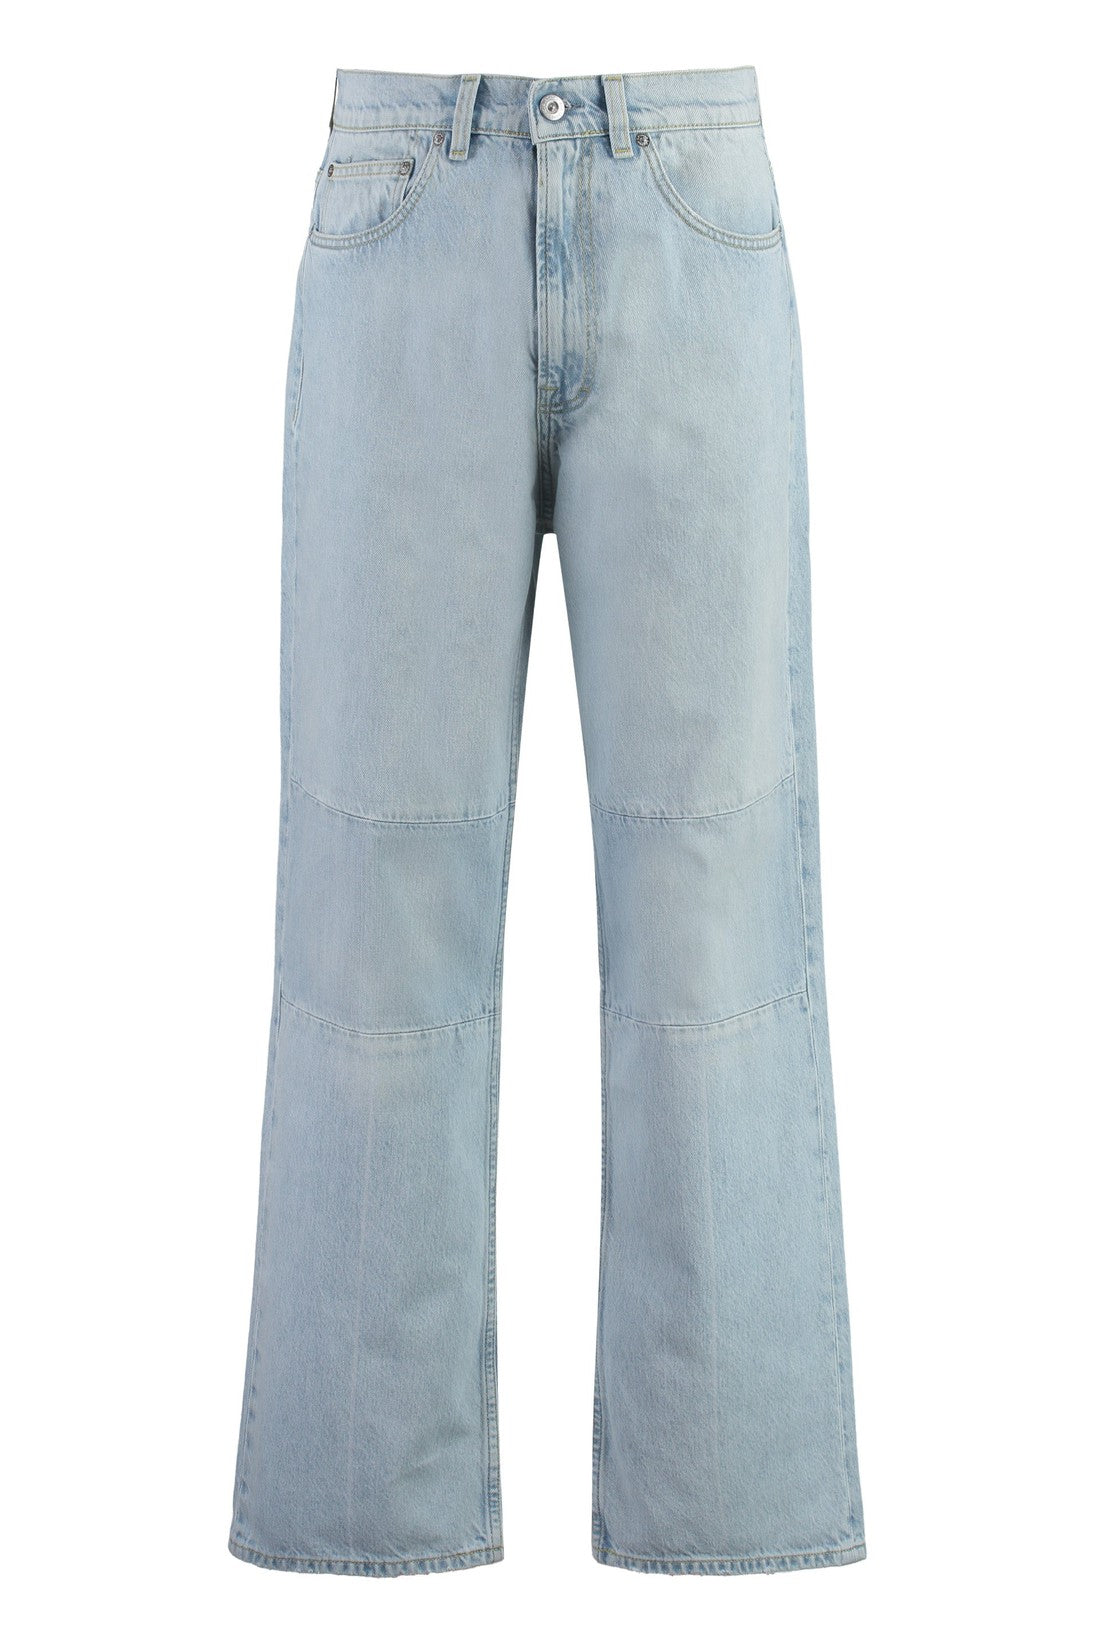 Our Legacy-OUTLET-SALE-Third Cut5-pocket jeans-ARCHIVIST